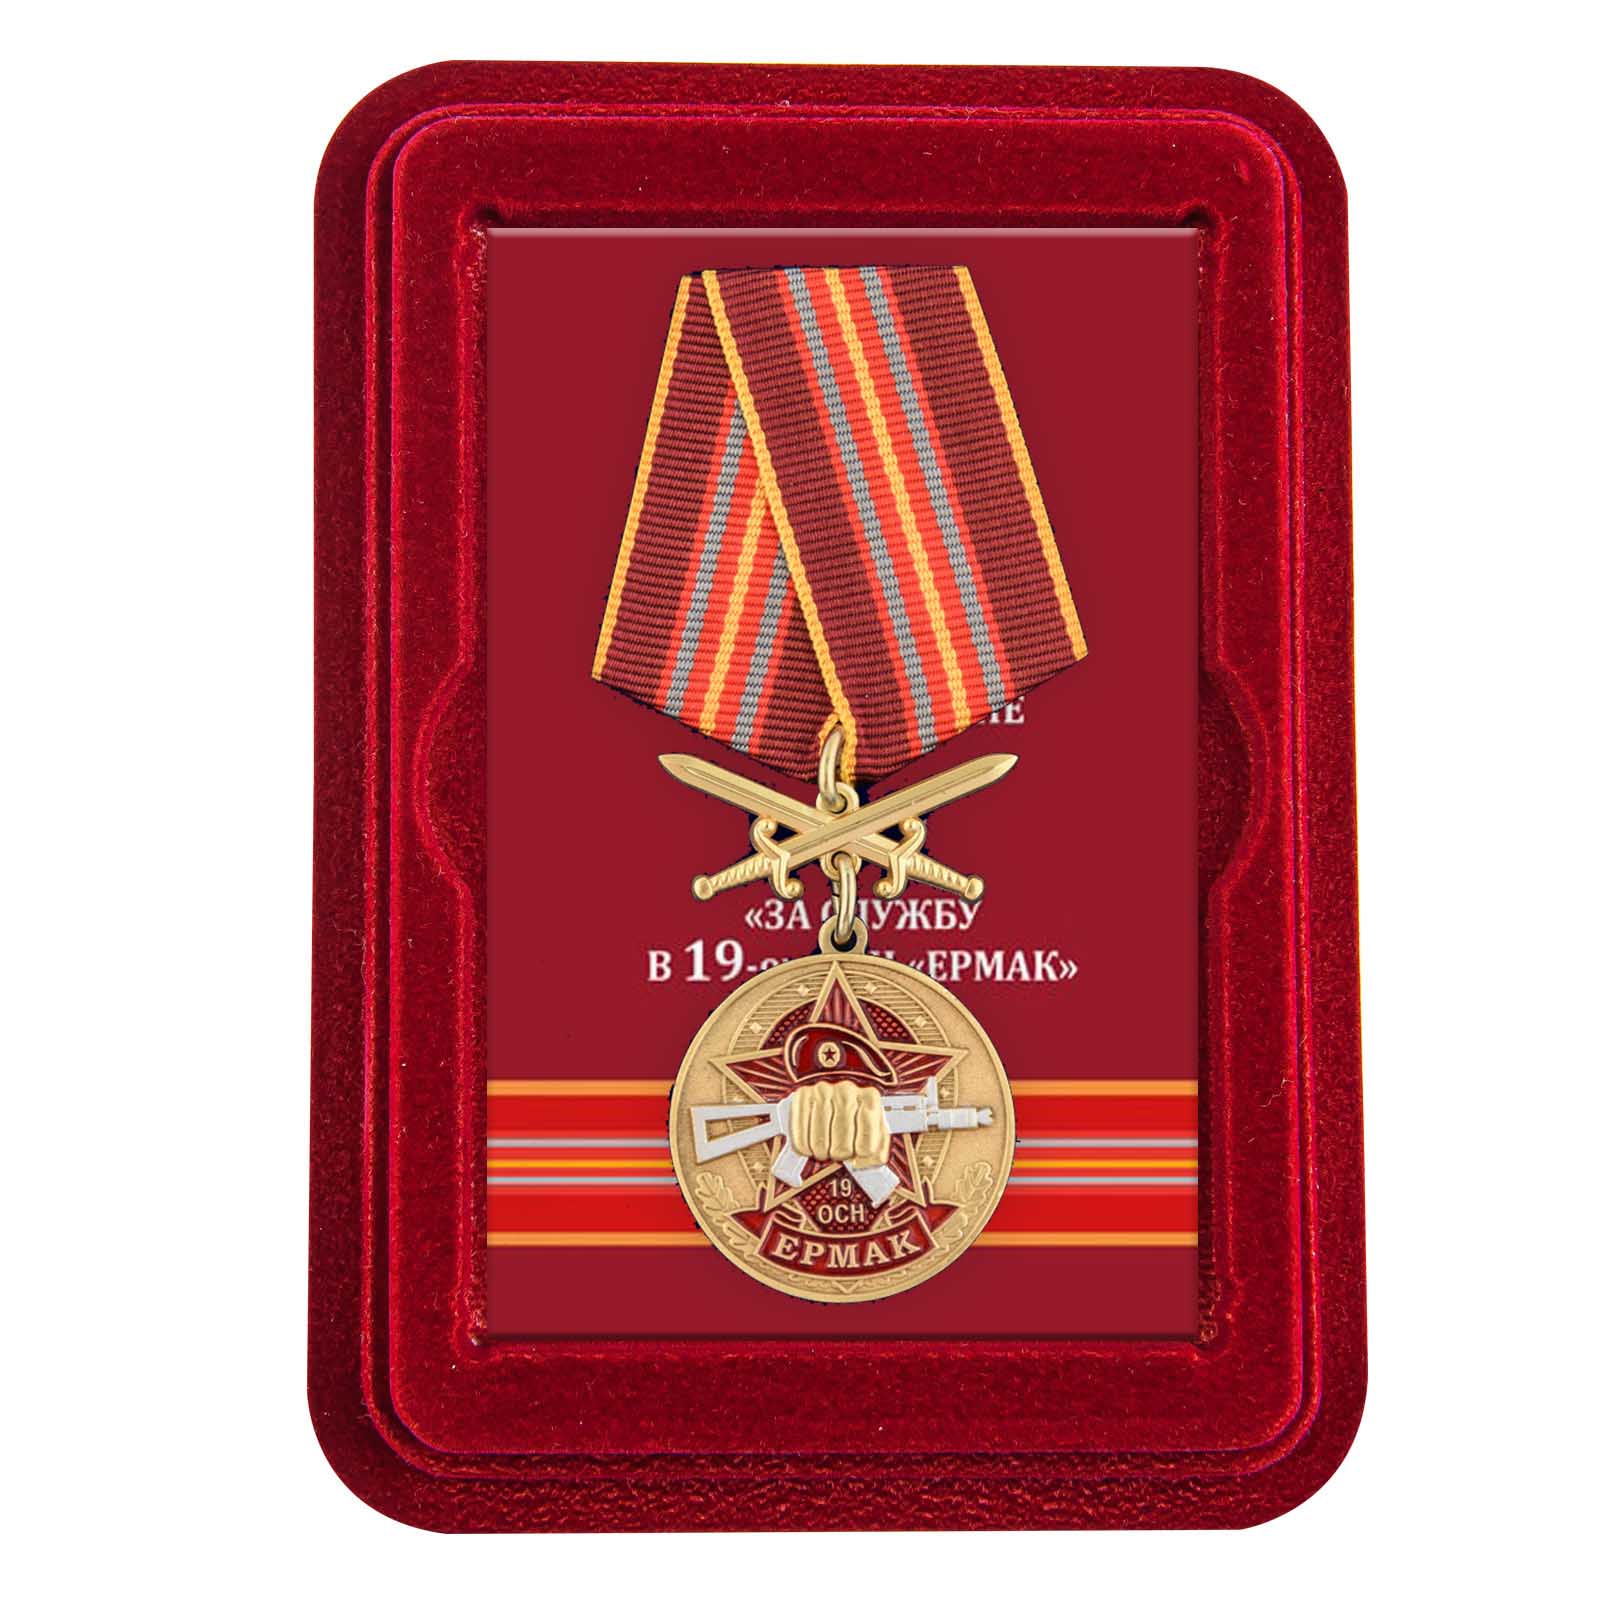 Медаль За службу в 19-ом ОСН "Ермак" в футляре из флока